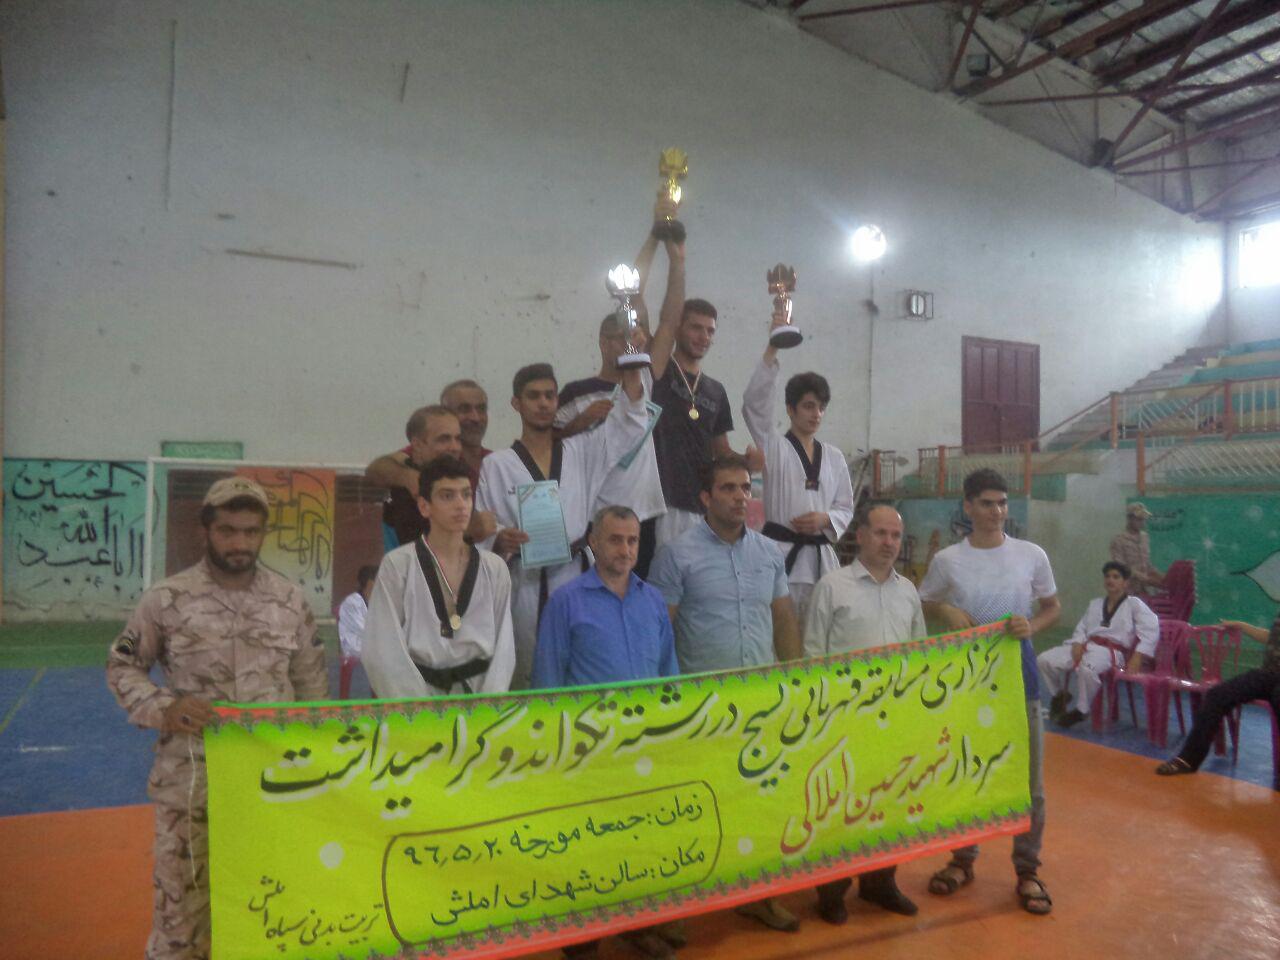 مسابقه تکواندو قهرمانی بسیج گرامیداشت سردار شهید حسین املاکی در شهرستان املش برگزار شد